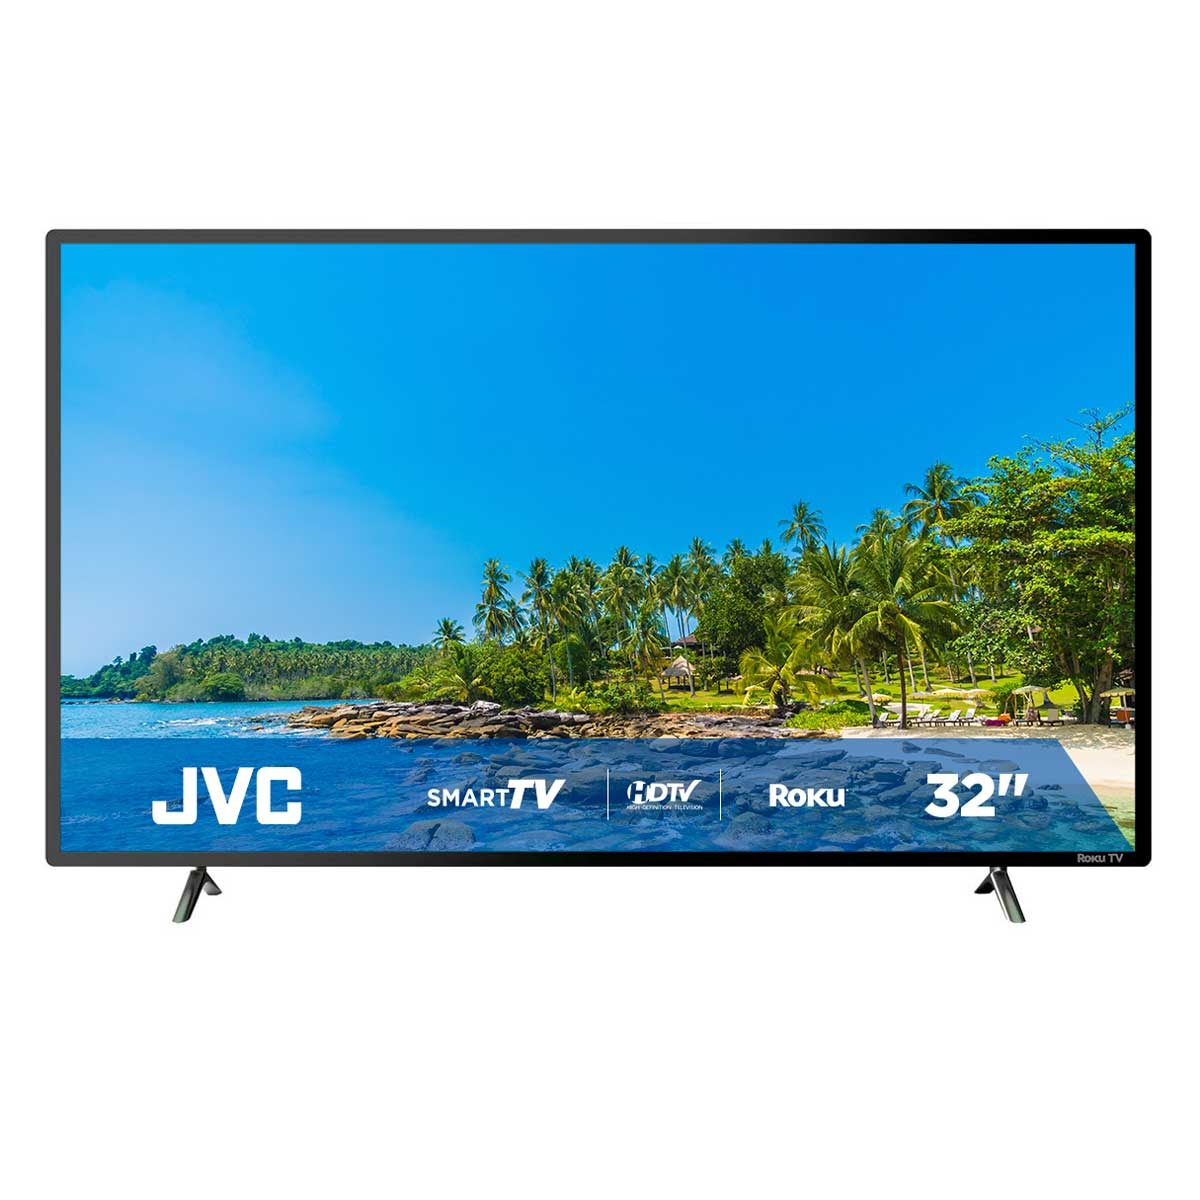 Modelos de JVC Roku TV – Encuentra smart TV HD y 4K